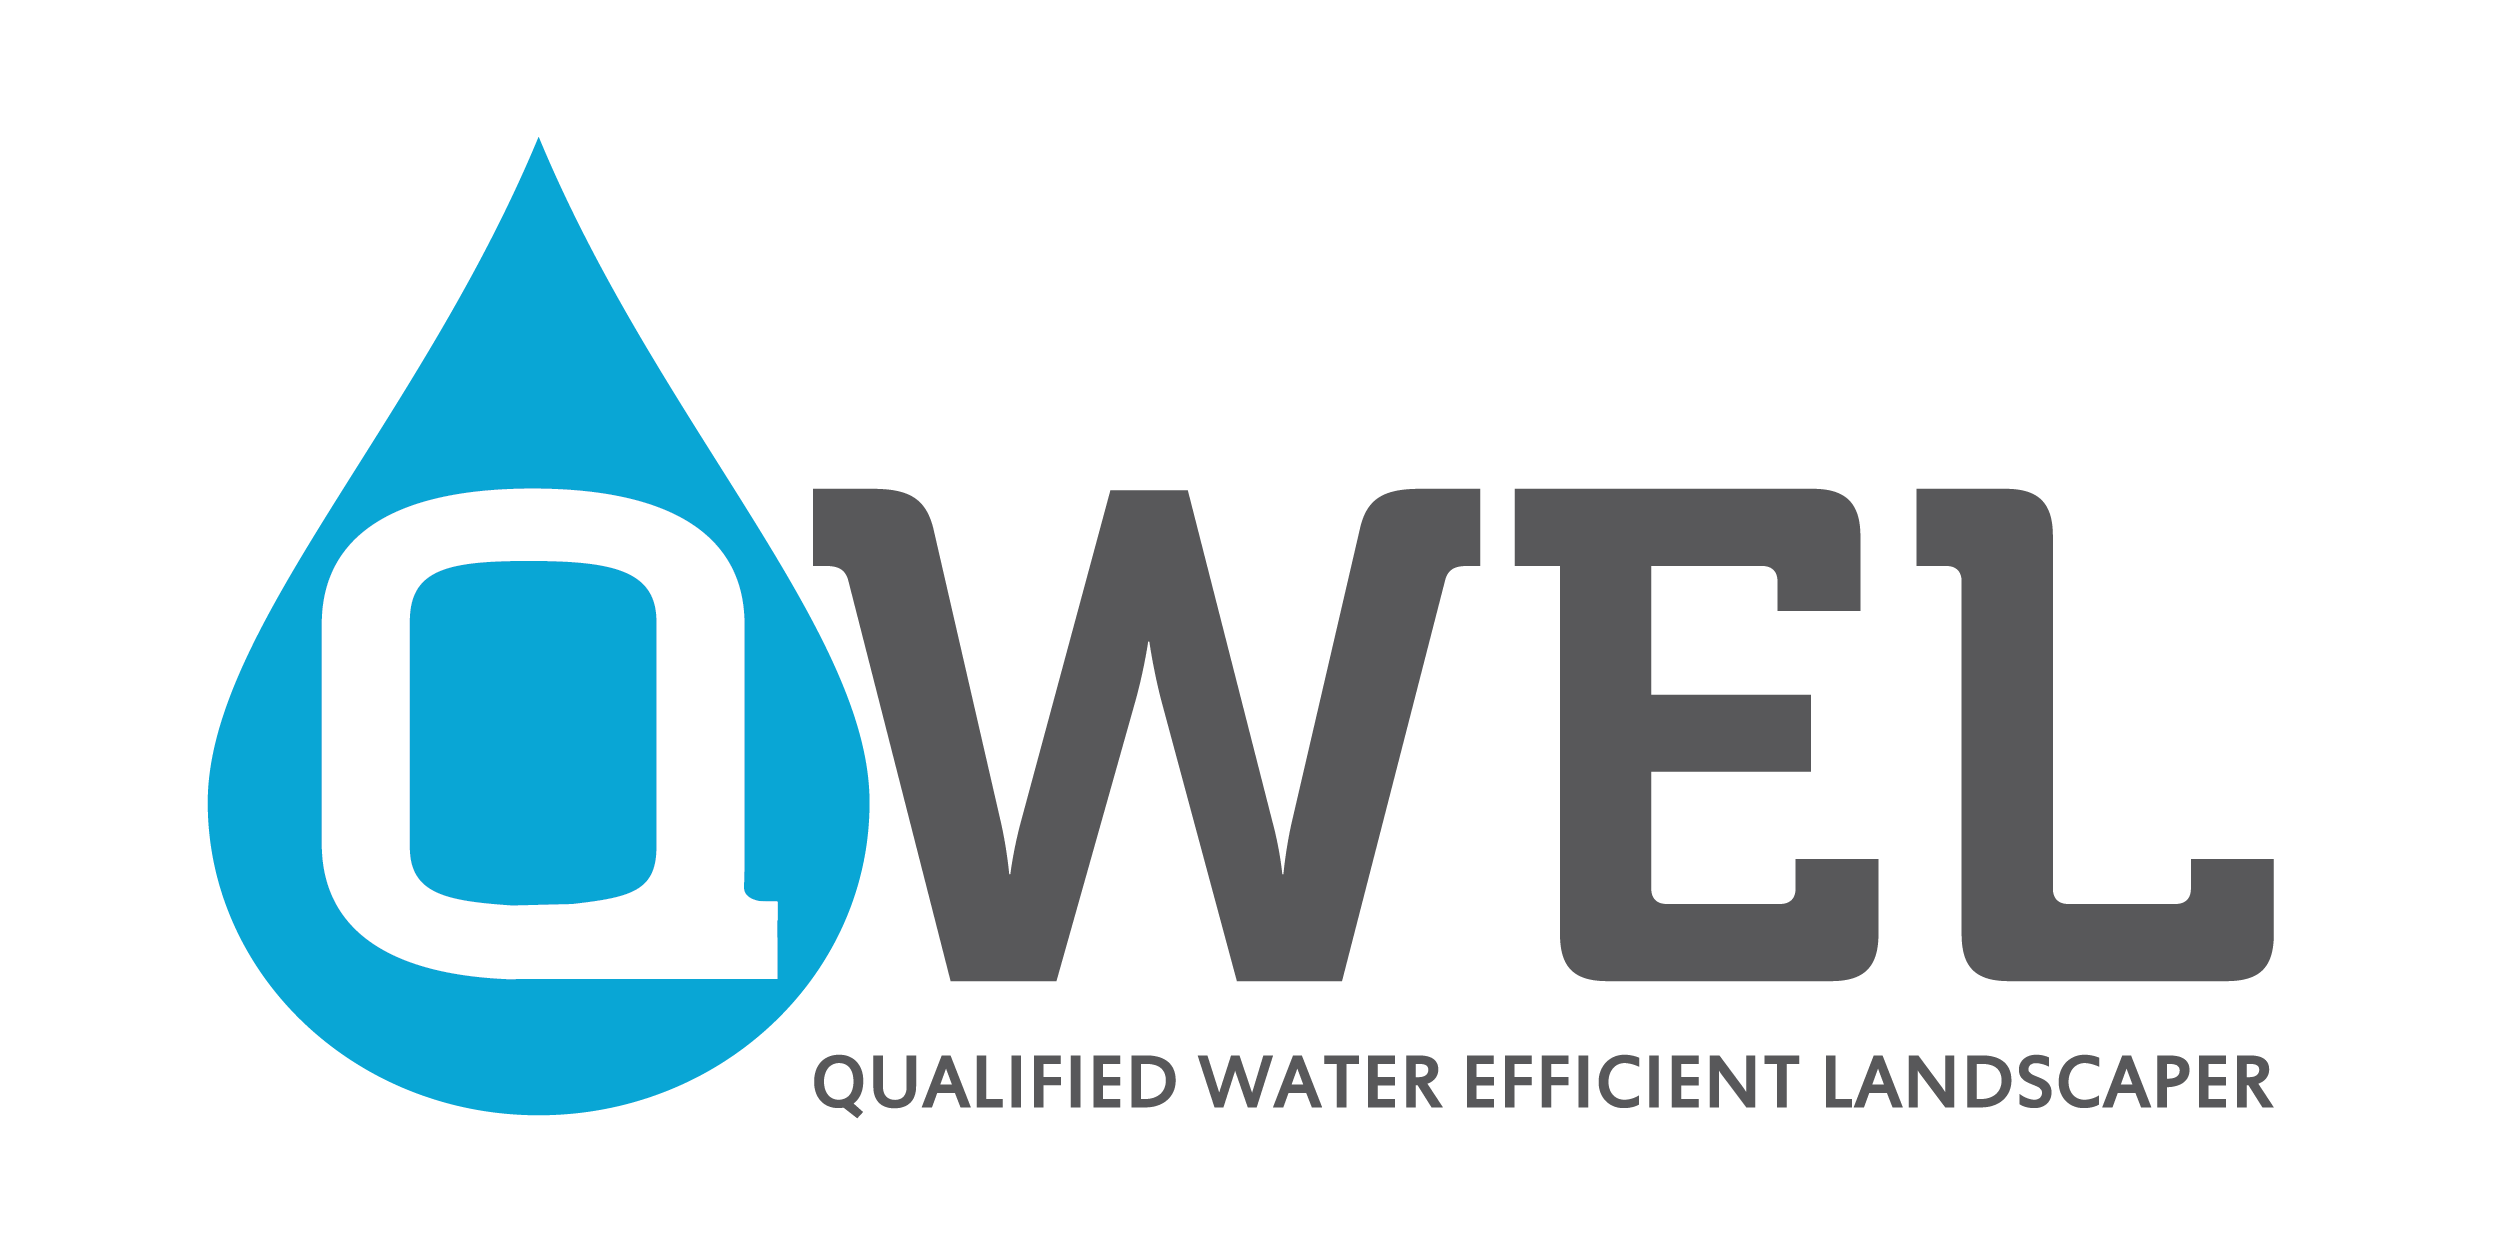 Qualified Water Efficient Landscaper